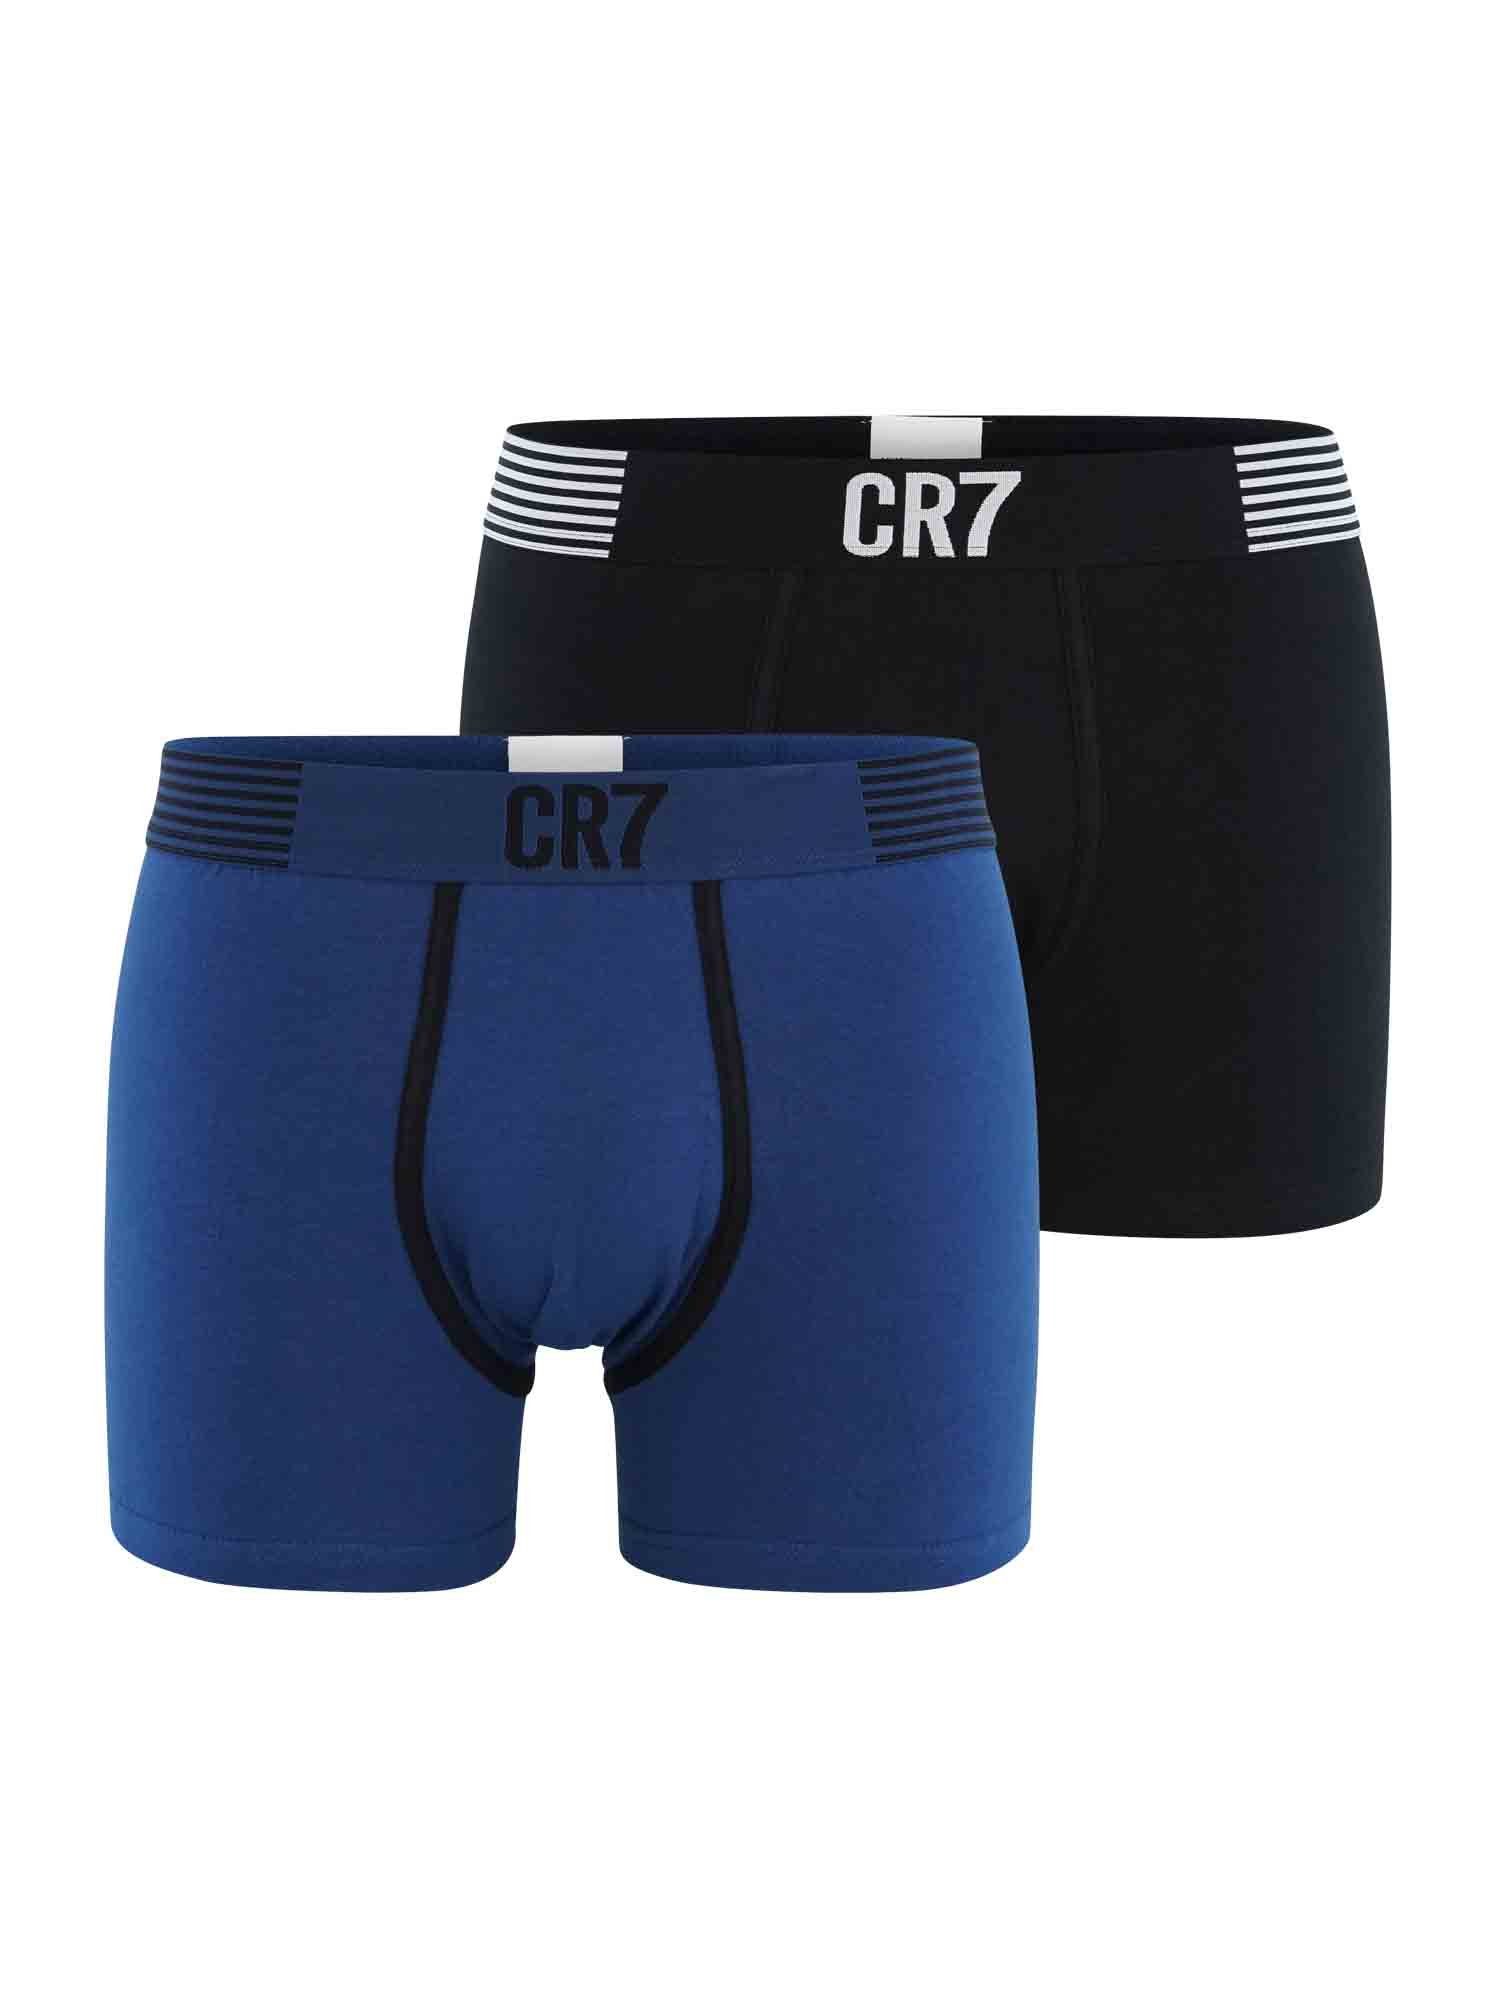 CR7 Retro Pants Herren Männer Boxershorts Retro Pants Trunks Multipack (2-St)